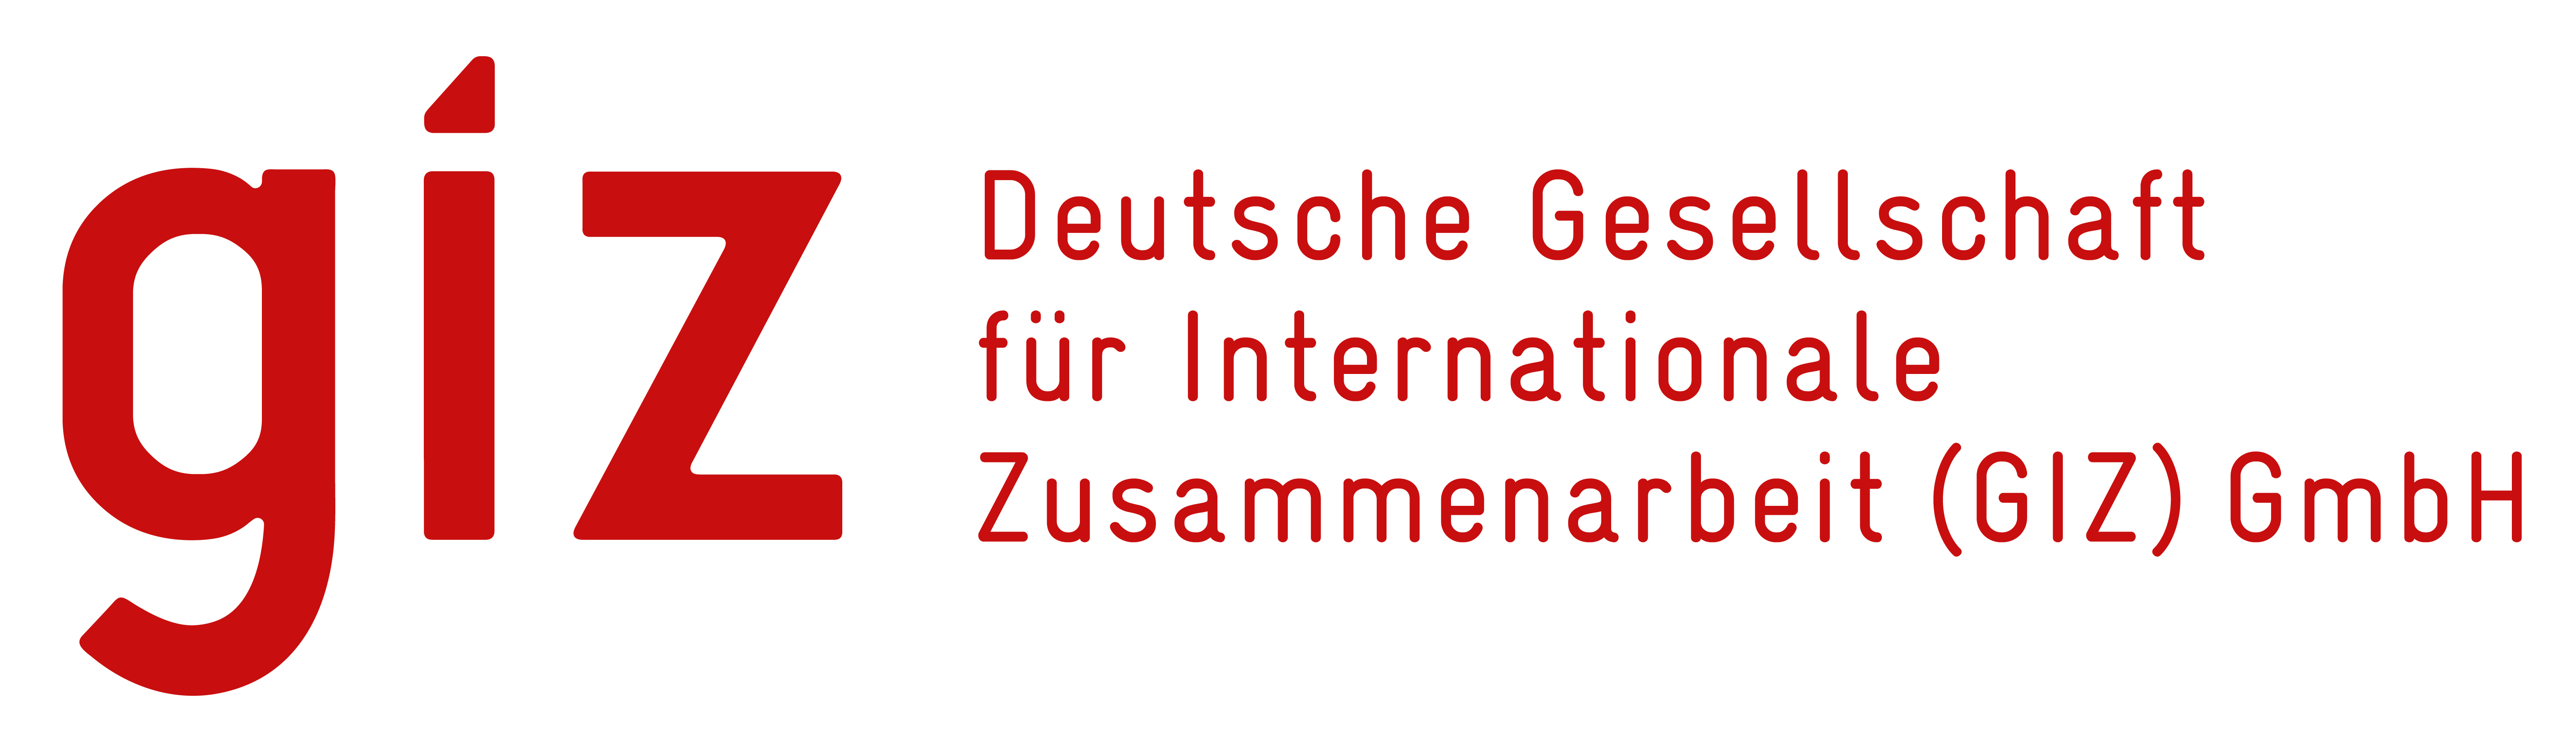 Deutsche Gesellschaft für Internationale Zusammenarbeit GmbH (GIZ)